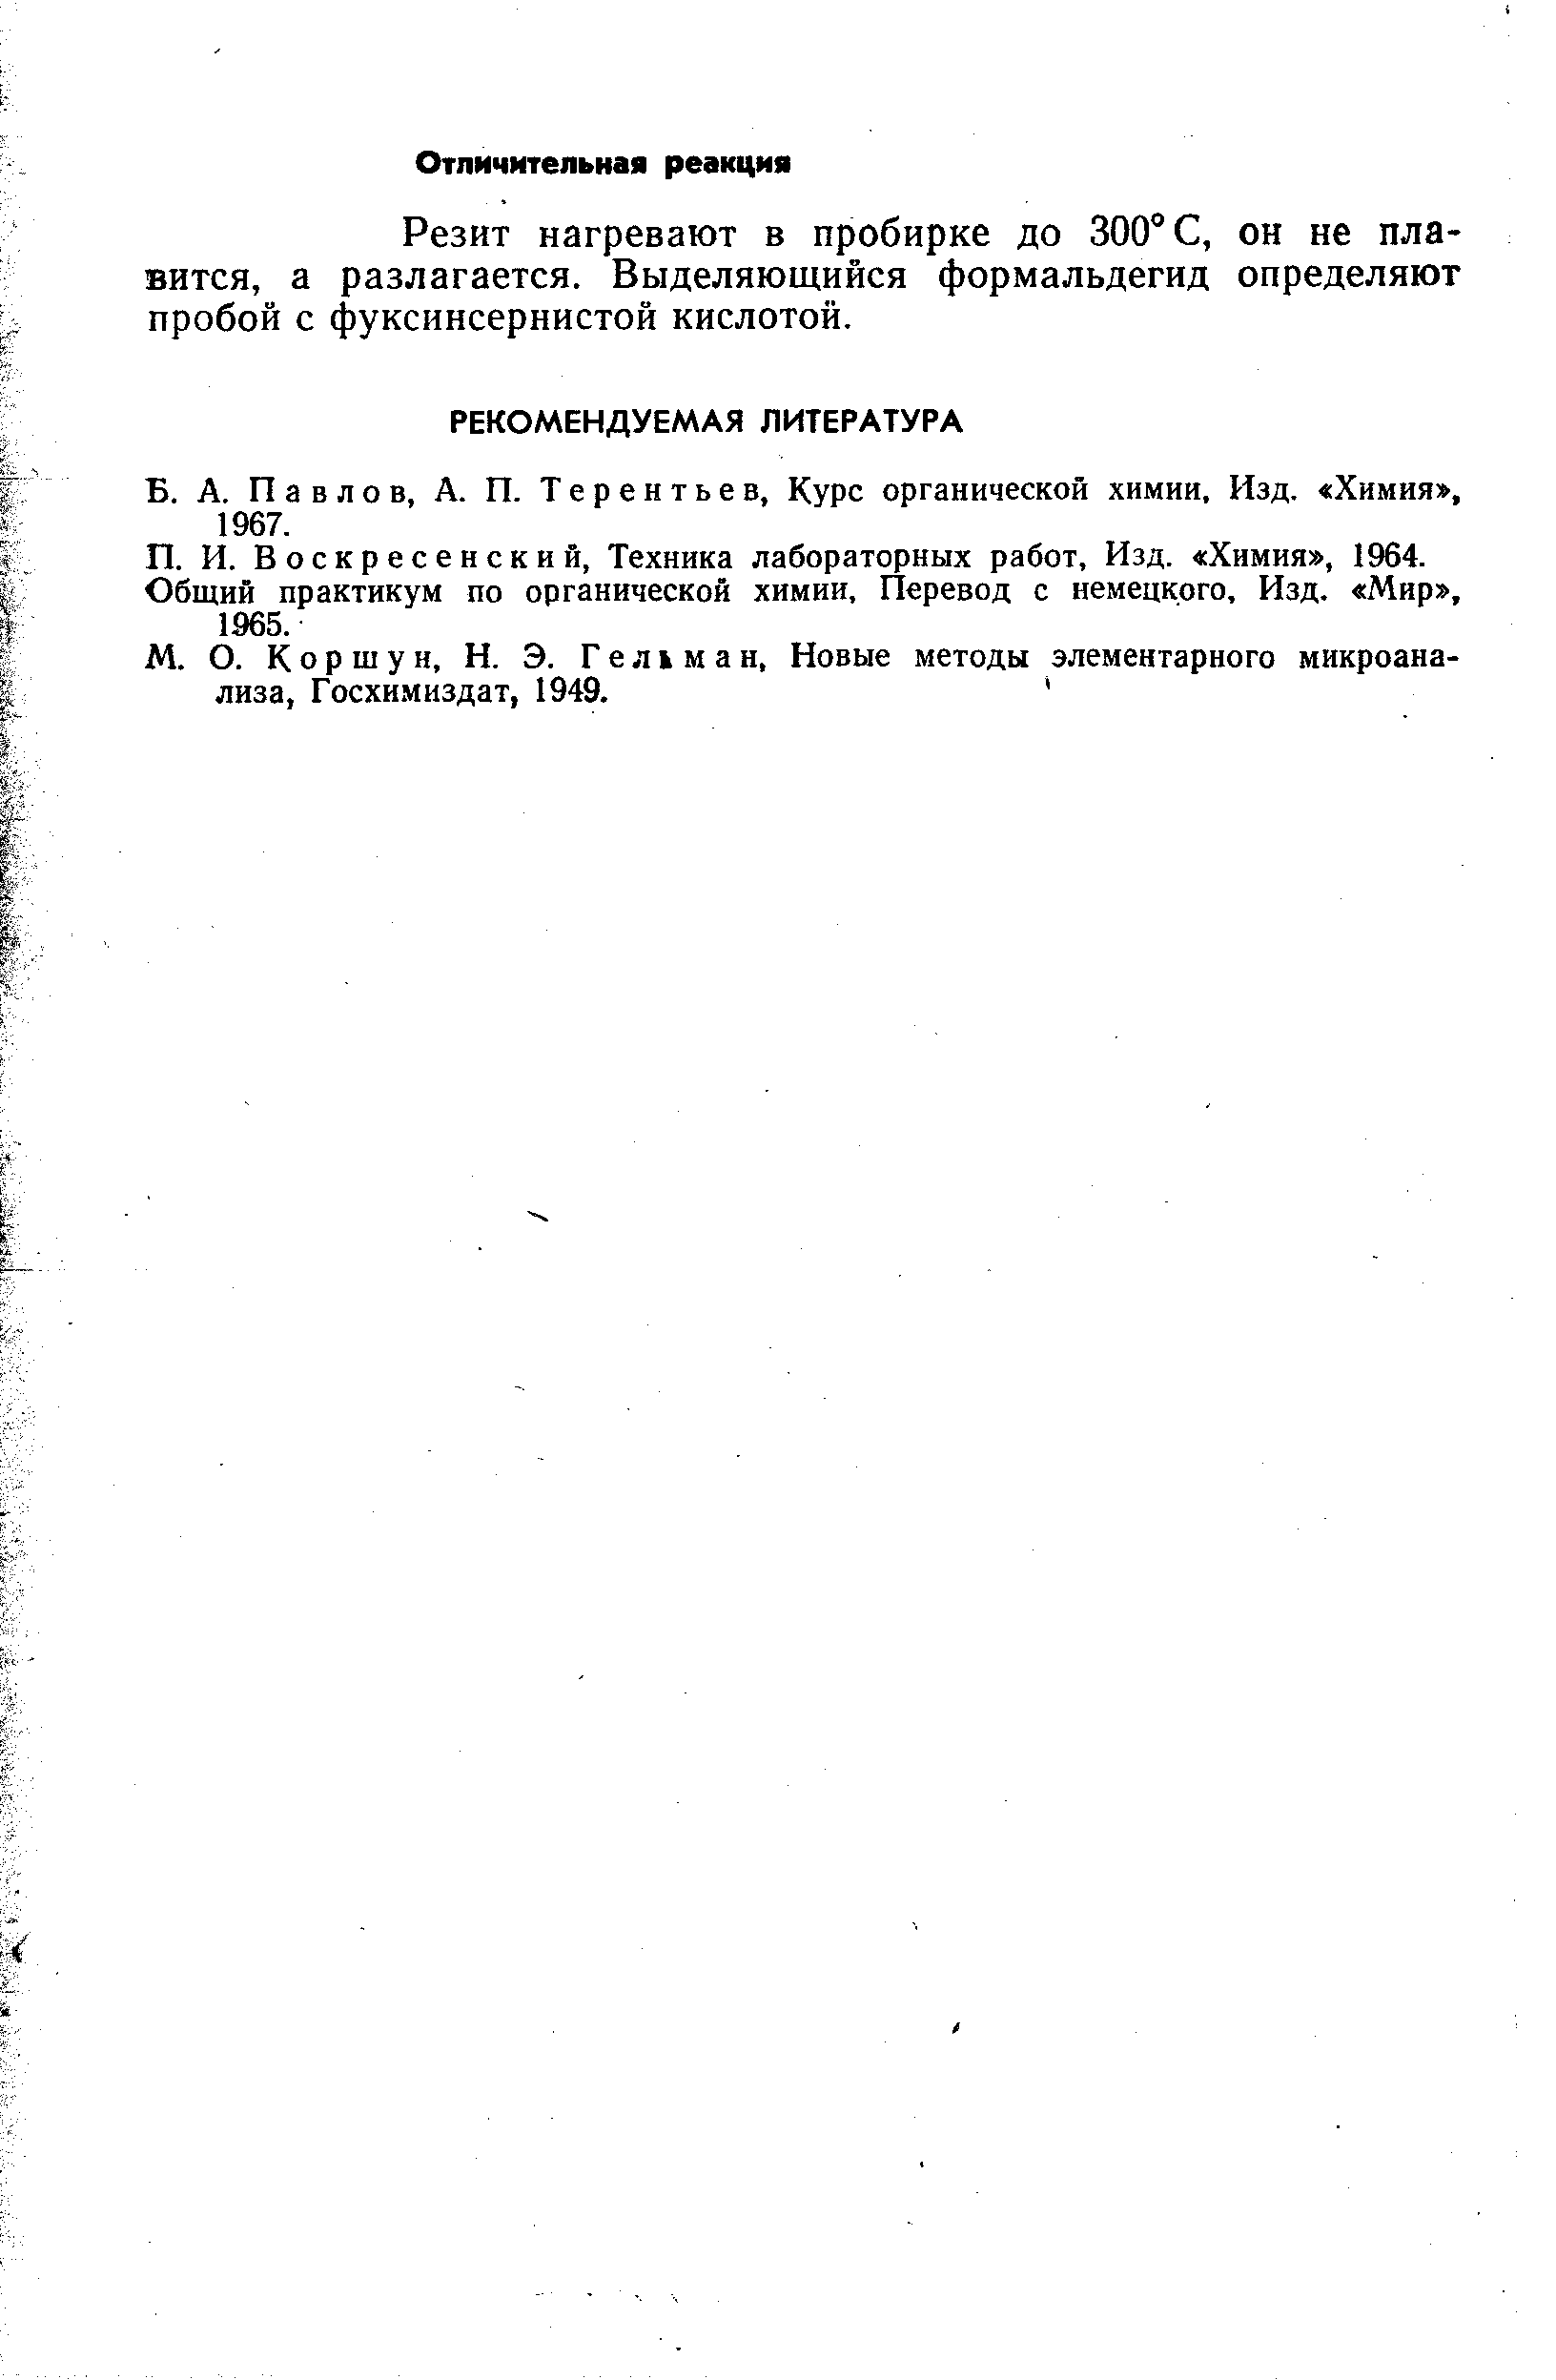 Павлов, А. П. Терентьев, Курс органической химии. Изд. Химия , 1967.